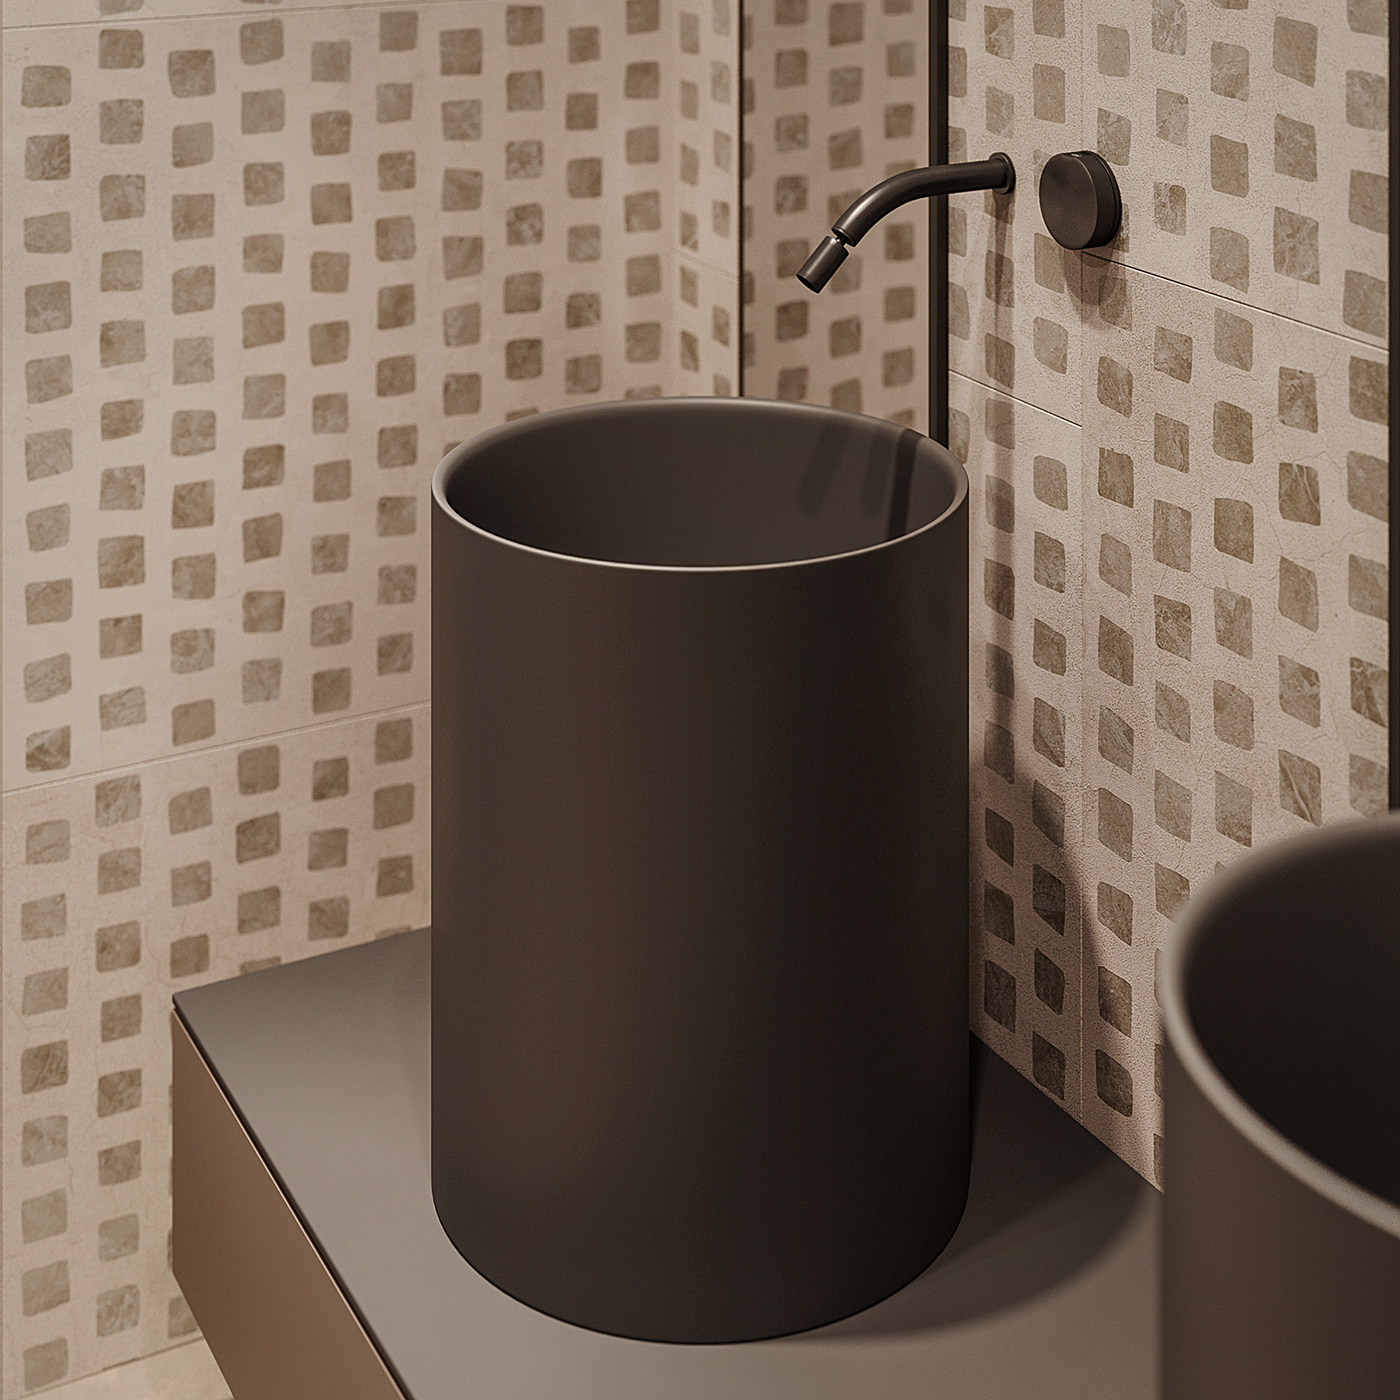 Màu đen giúp tăng thêm vẻ sang trọng, tạo chiều sâu cho phòng tắm.